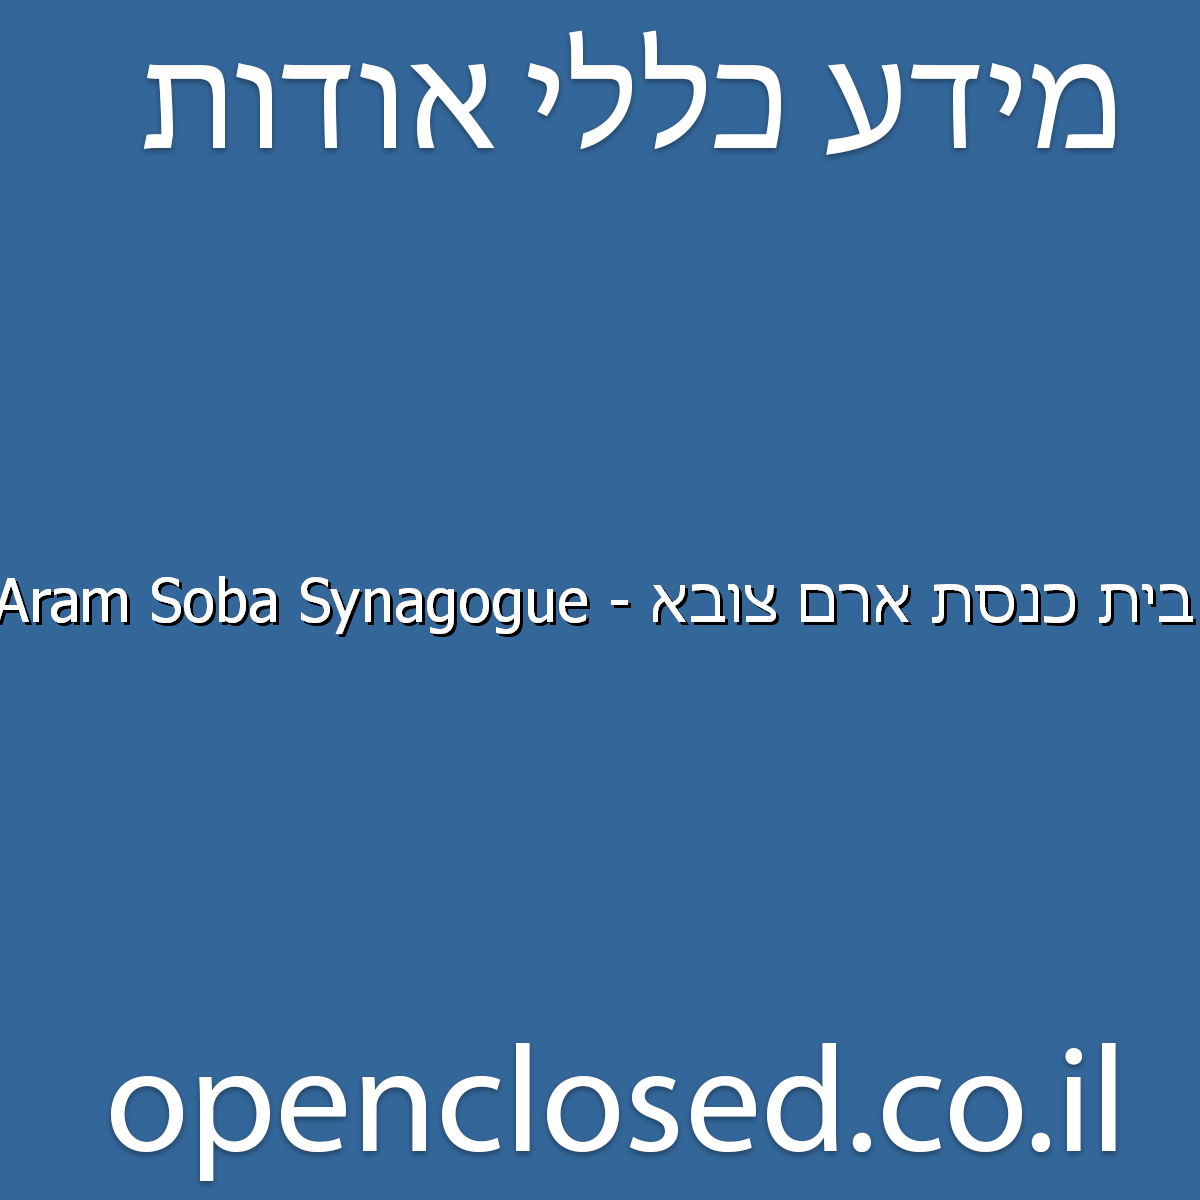 בית כנסת ארם צובא – Aram Soba Synagogue